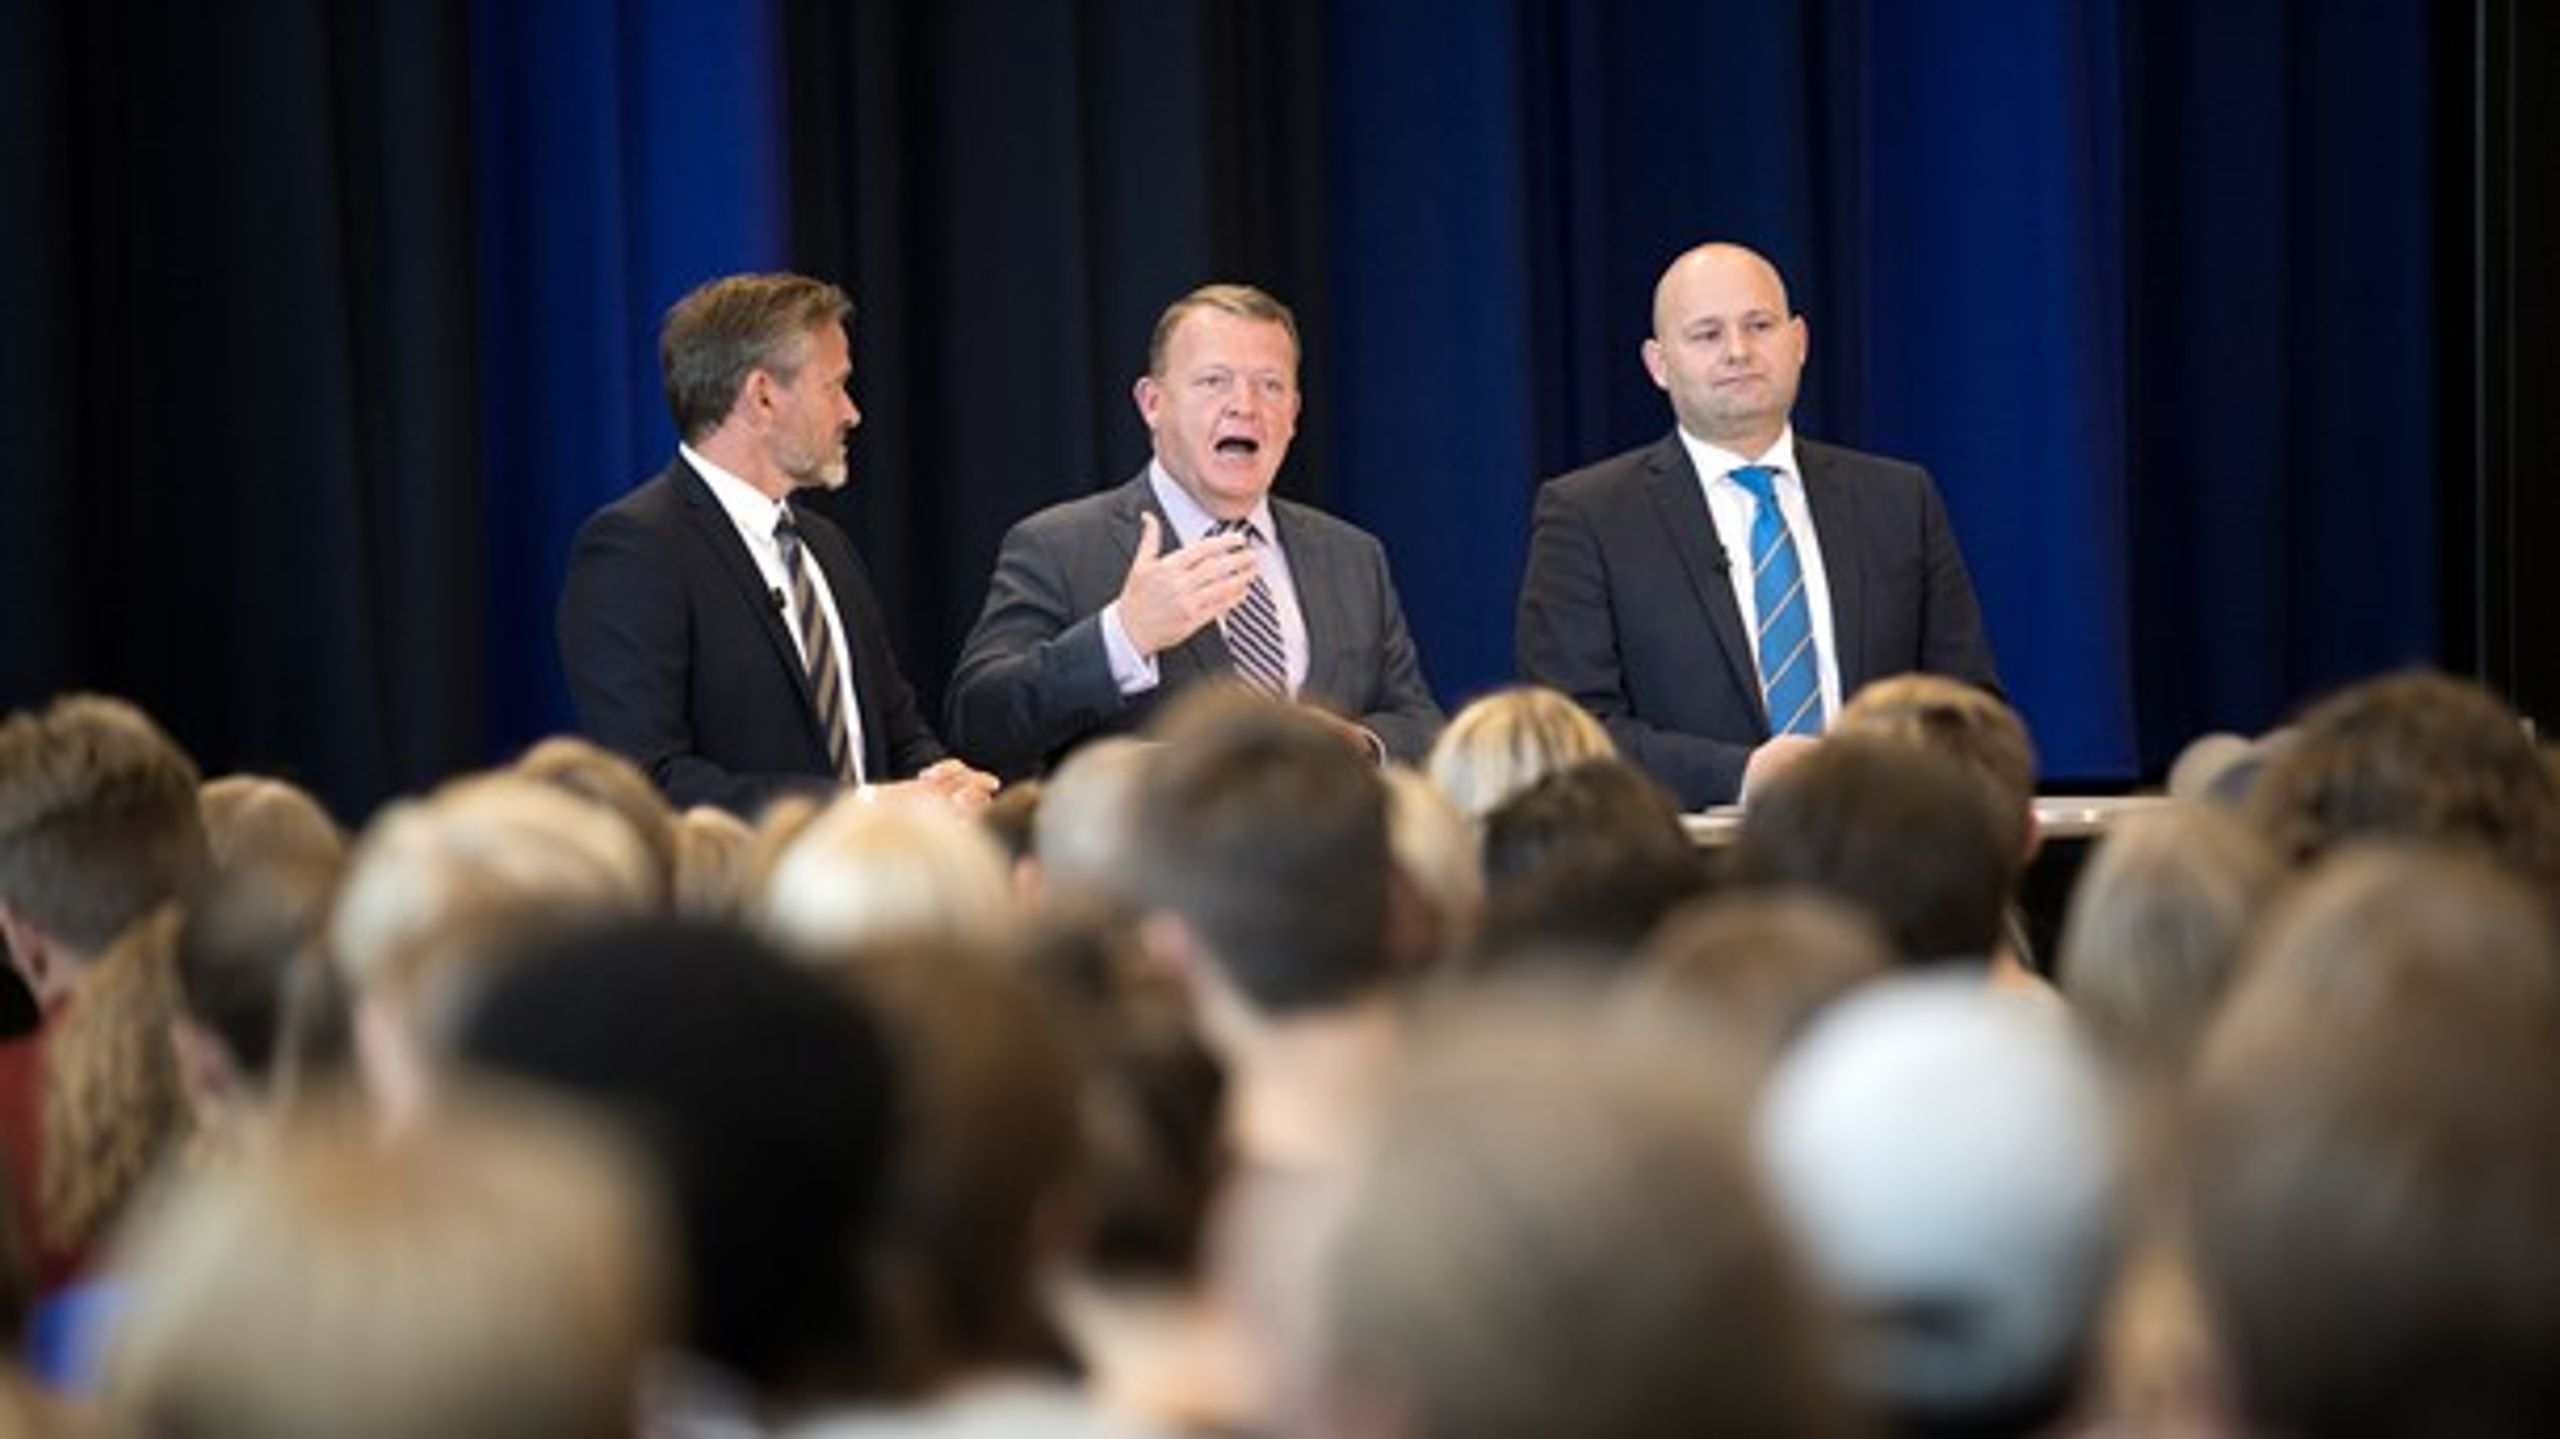 Statsminister Lars Løkke Rasmussen (V), justitsminister Søren Pape Poulsen (K) og udenrigsminister Anders Samuelsen (LA) besøgte mandag et gymnasium i Esbjerg.